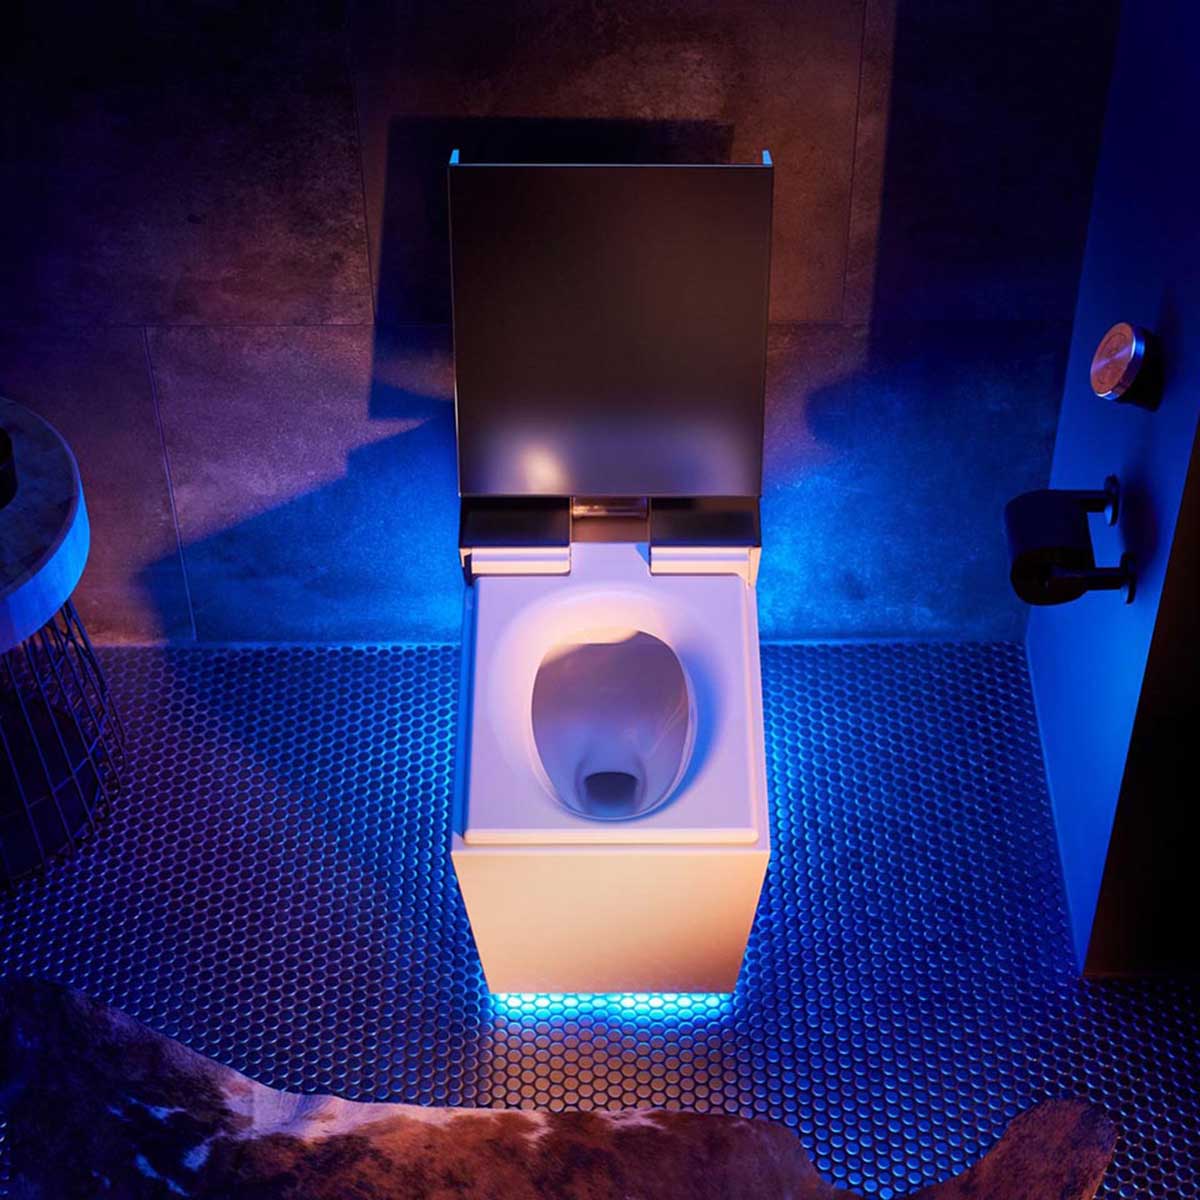 Toilet cảm biến tự động bằng giọng nói.

Nguồn: Kohler smart home